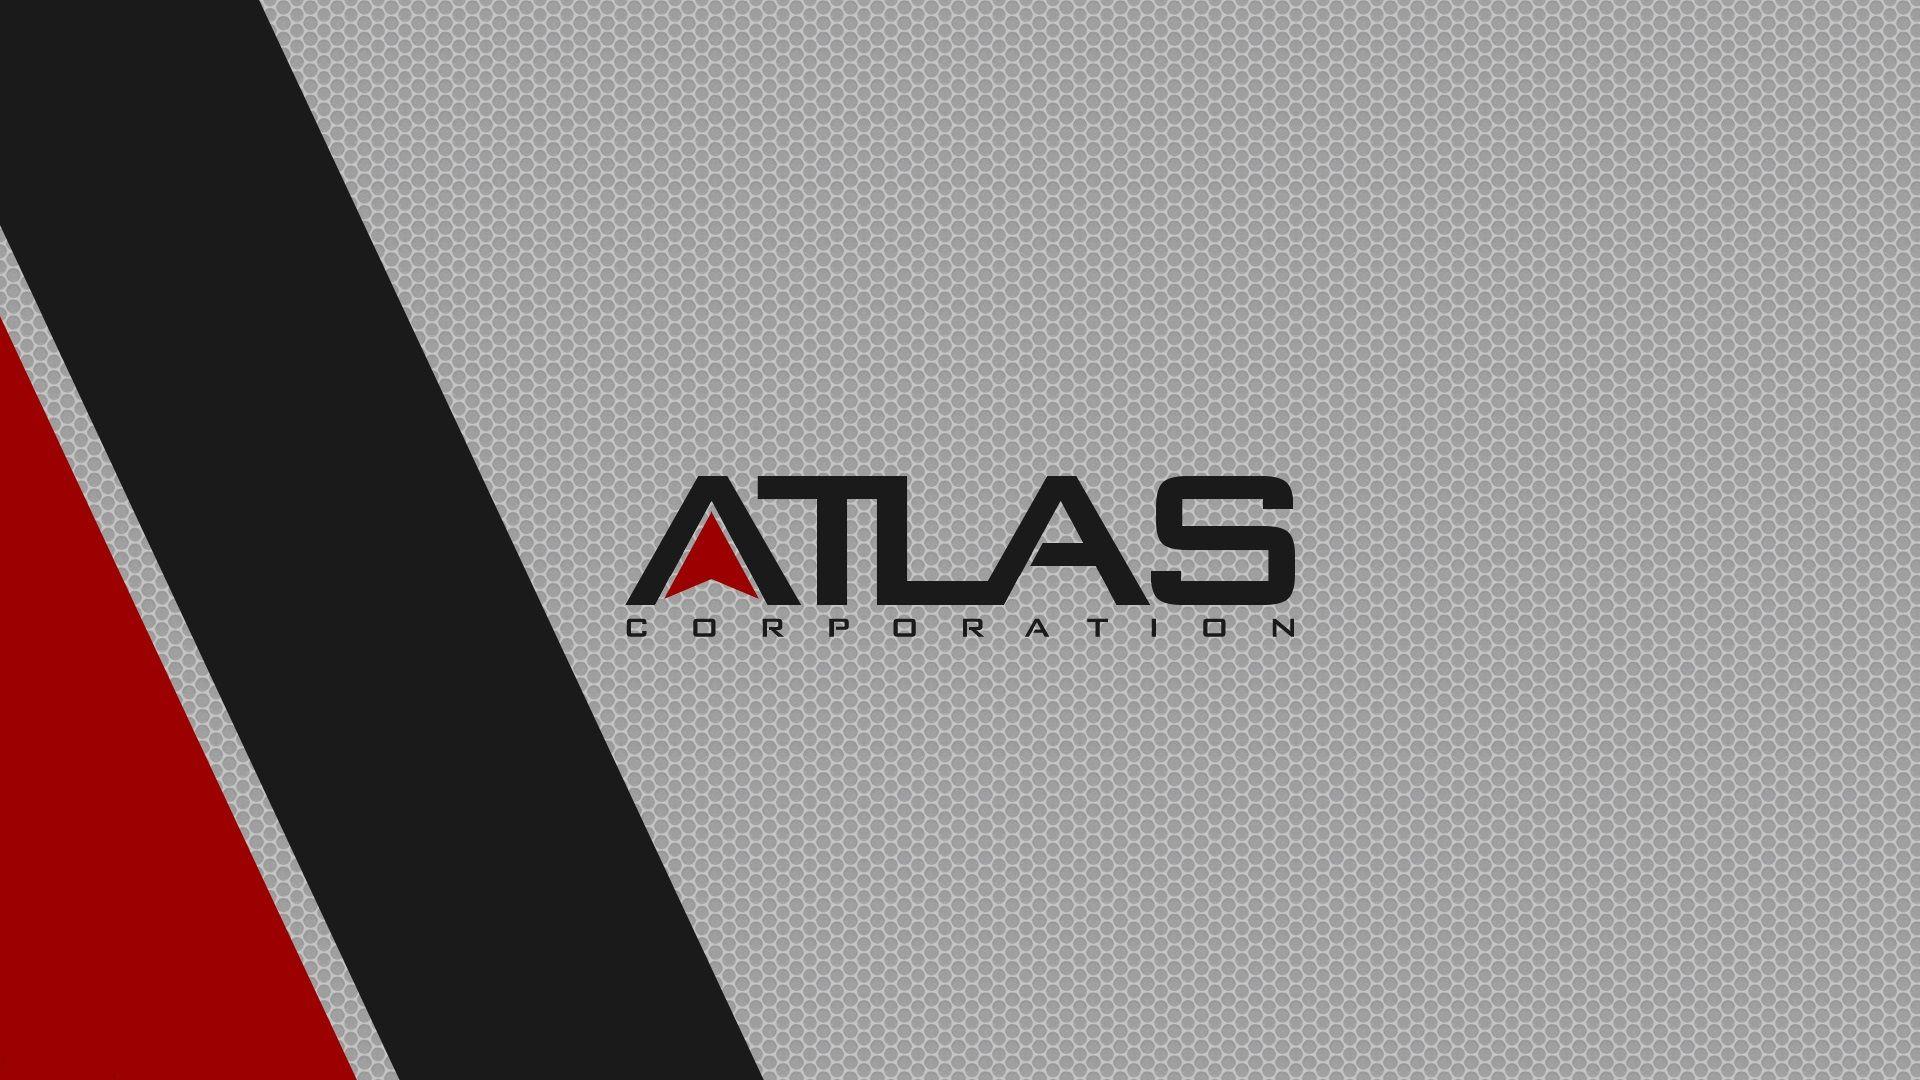 COD AW Atlas. Logos, Call of duty, Cod